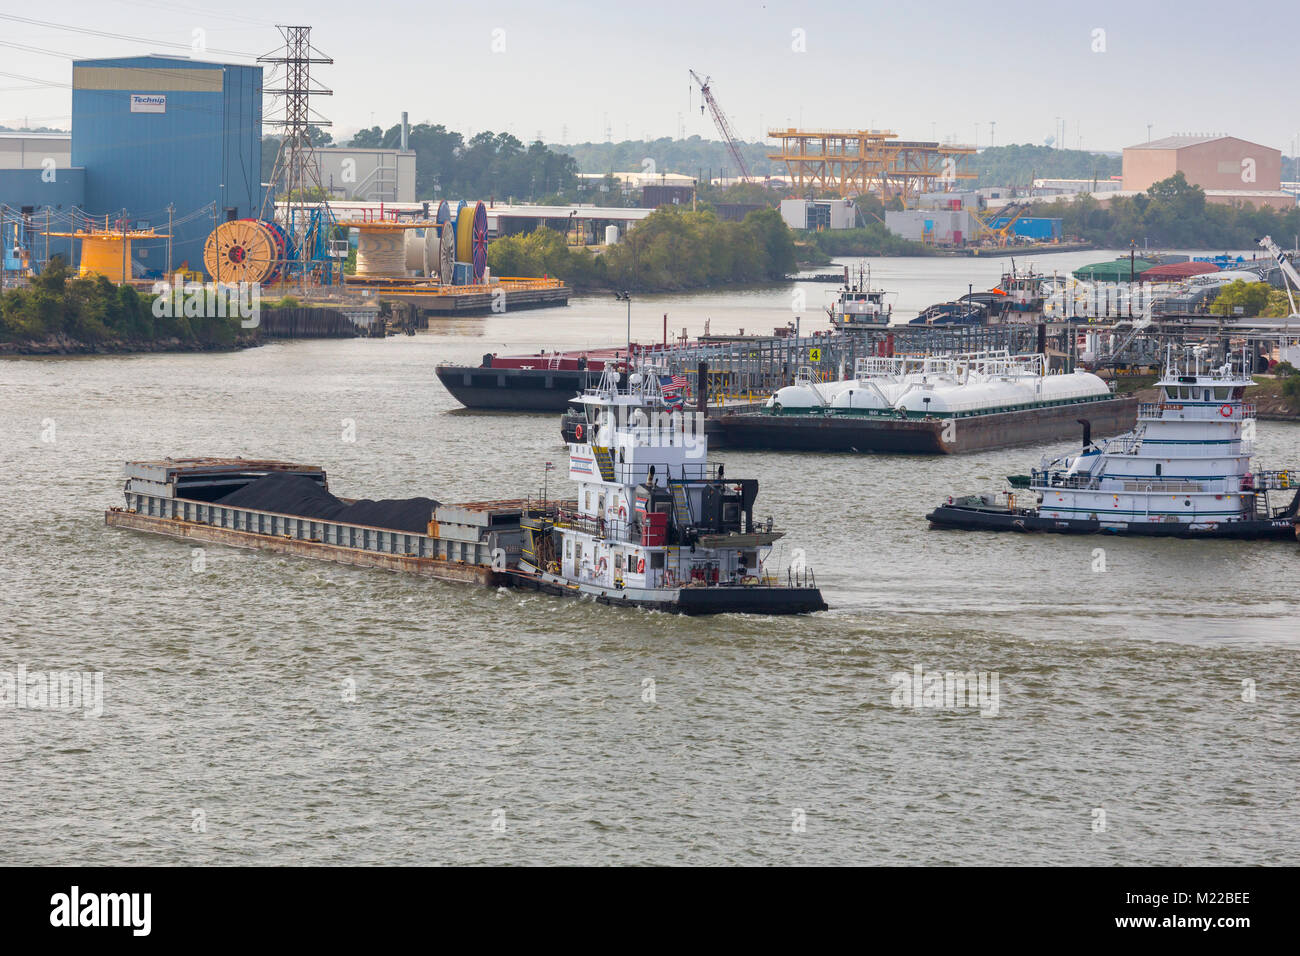 Houston, Texas - Il rimorchiatore Joe B. Ward spinge una chiatta caricata con carbone in Houston Ship Channel. Foto Stock